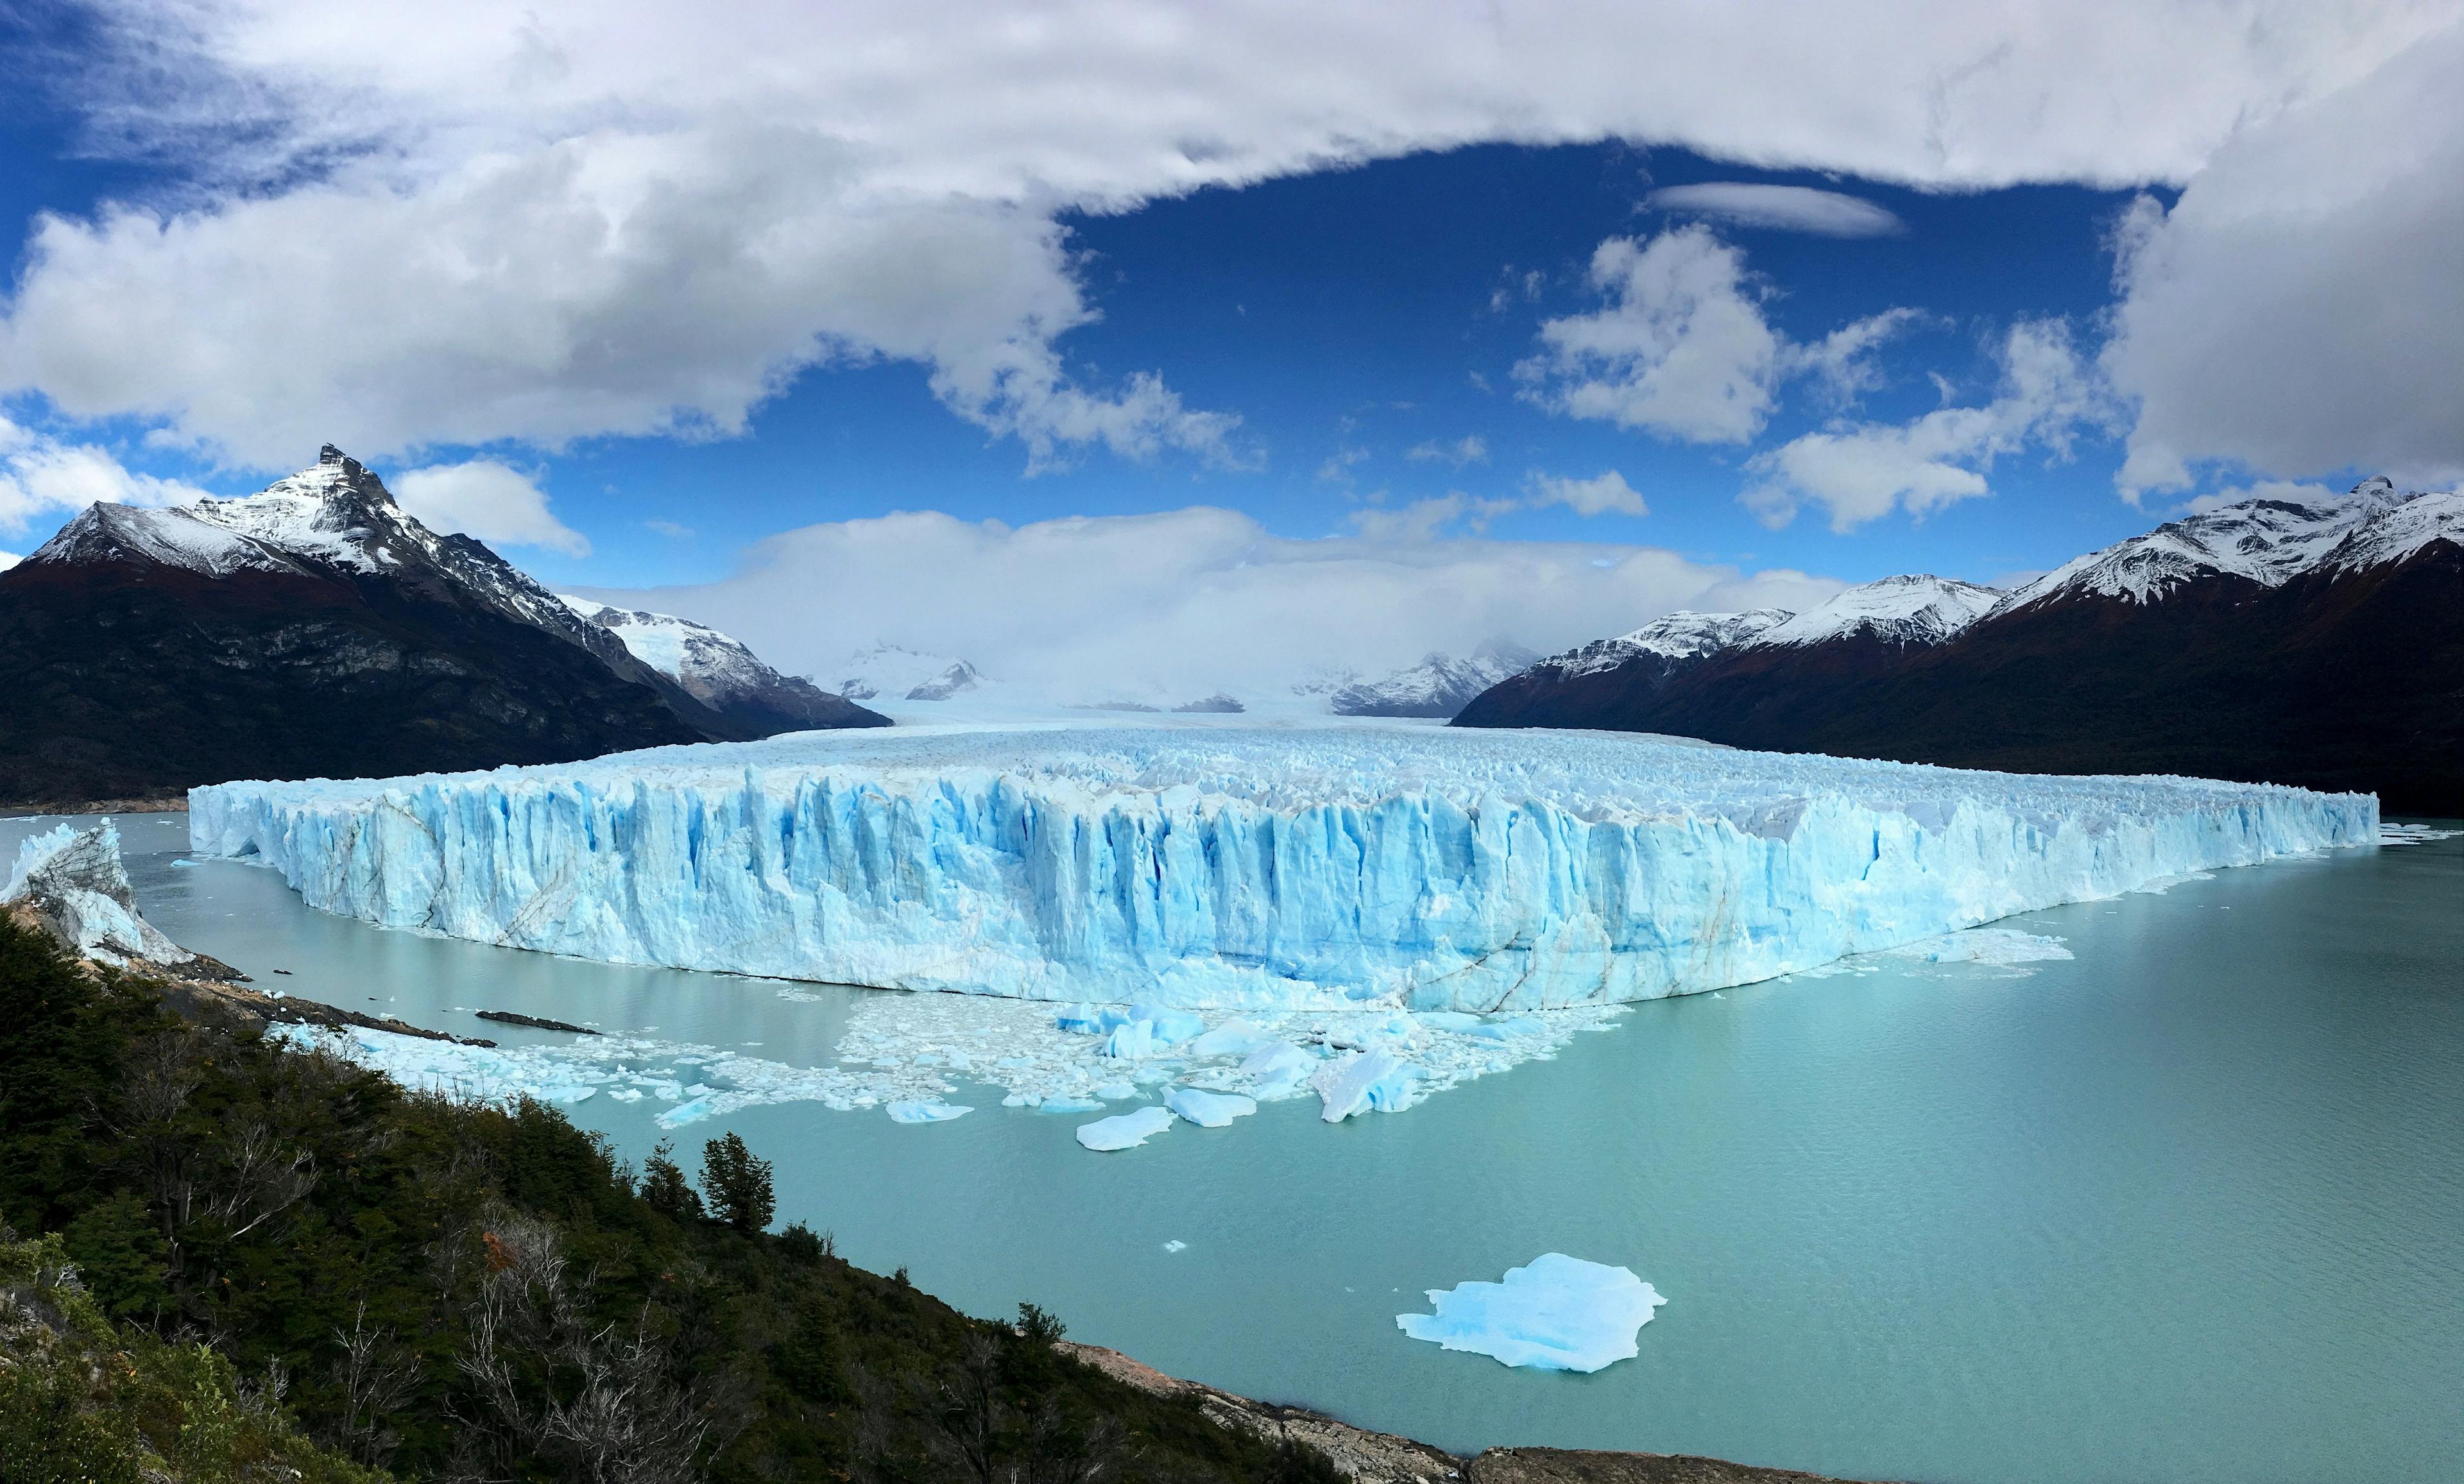 Perito Moreno Glacier in Argentina.